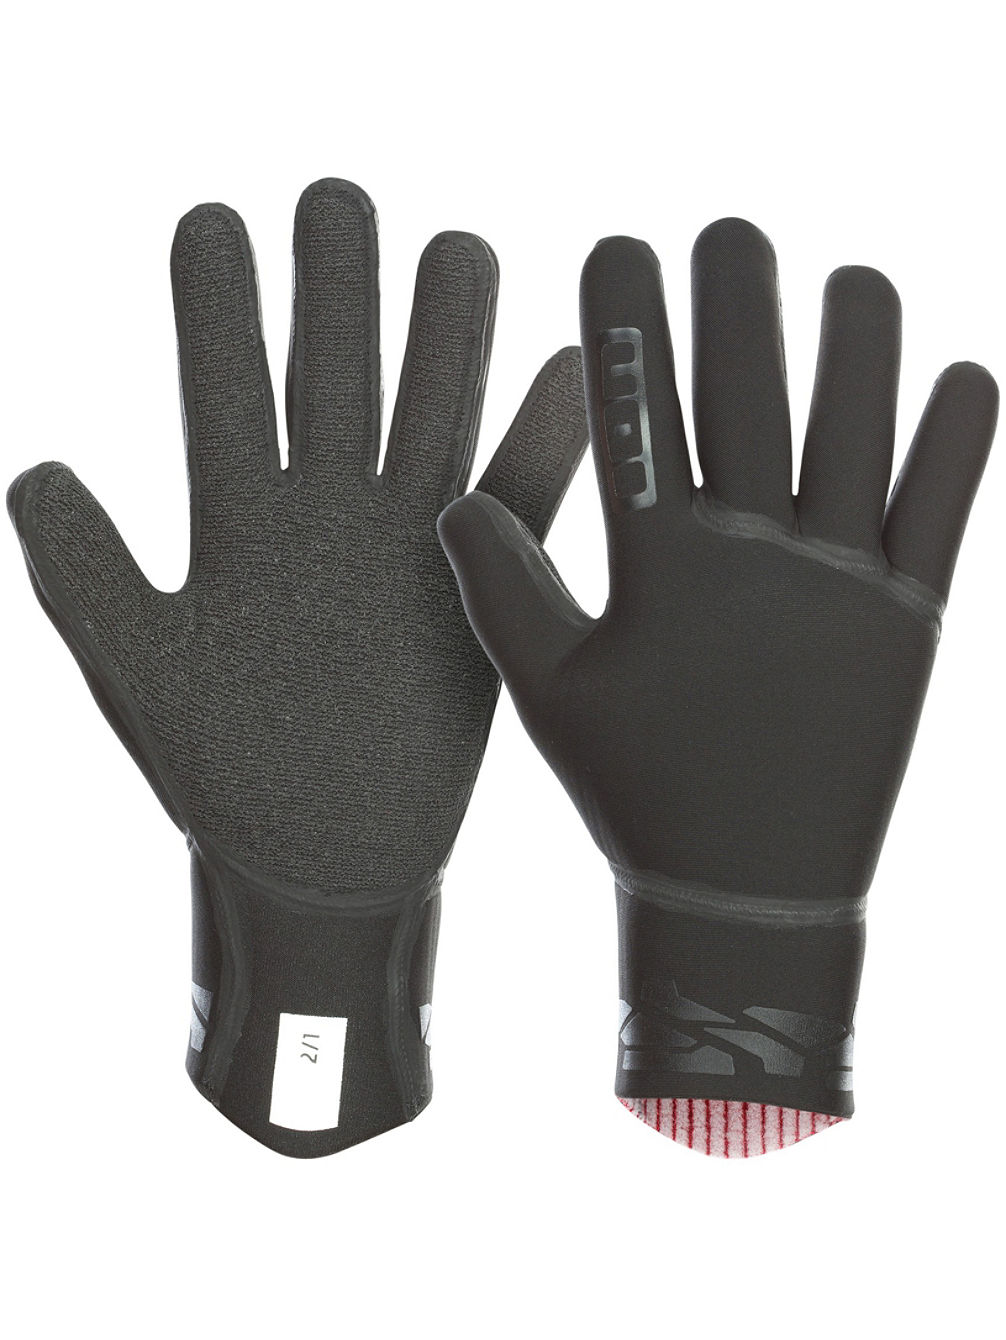 Neo 2/1 Neoprene Gloves